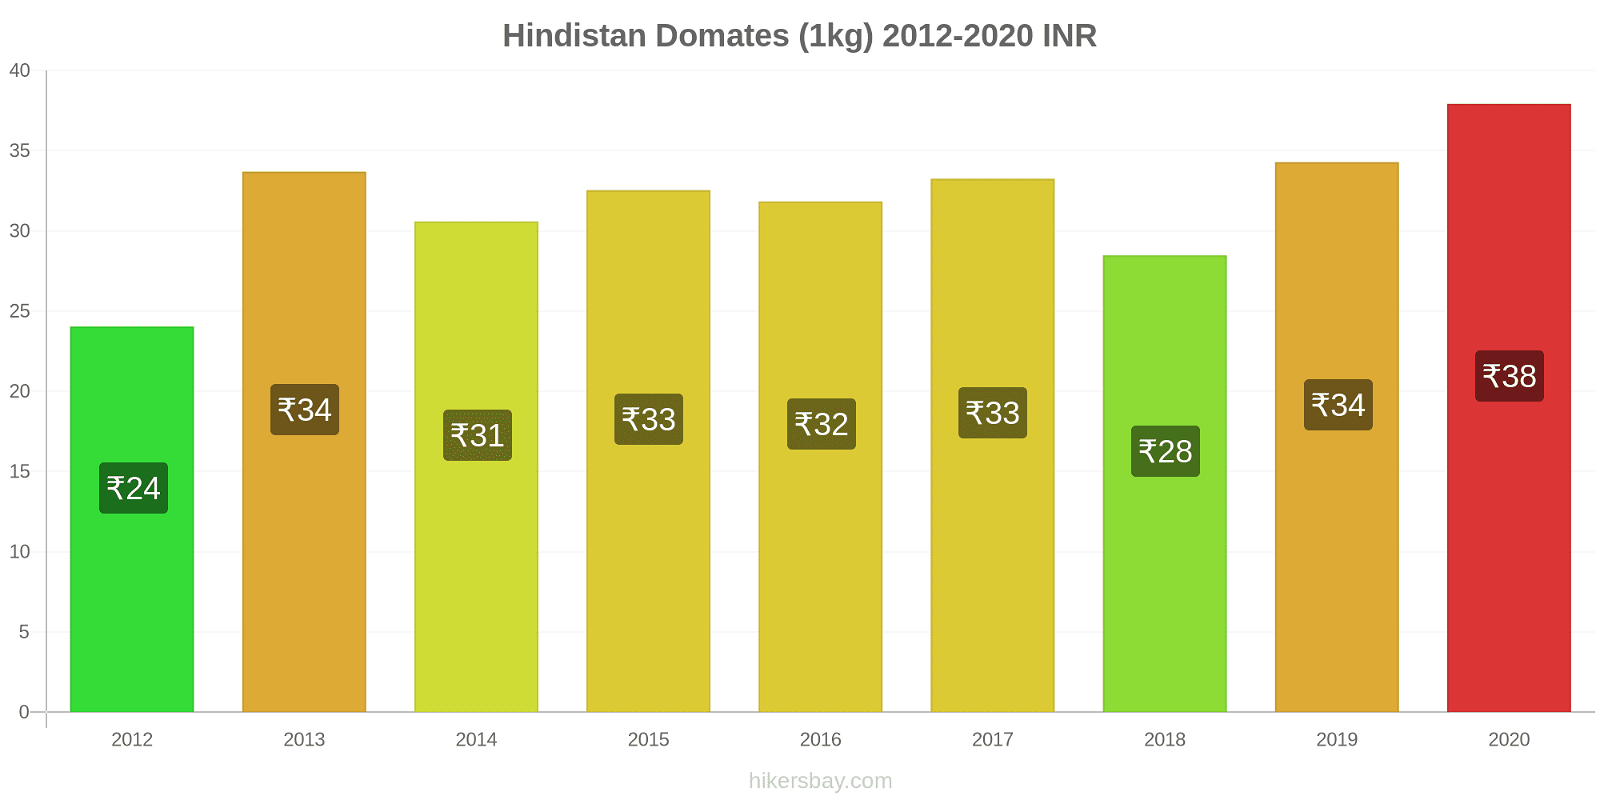 Hindistan fiyat değişiklikleri Domates (1kg) hikersbay.com